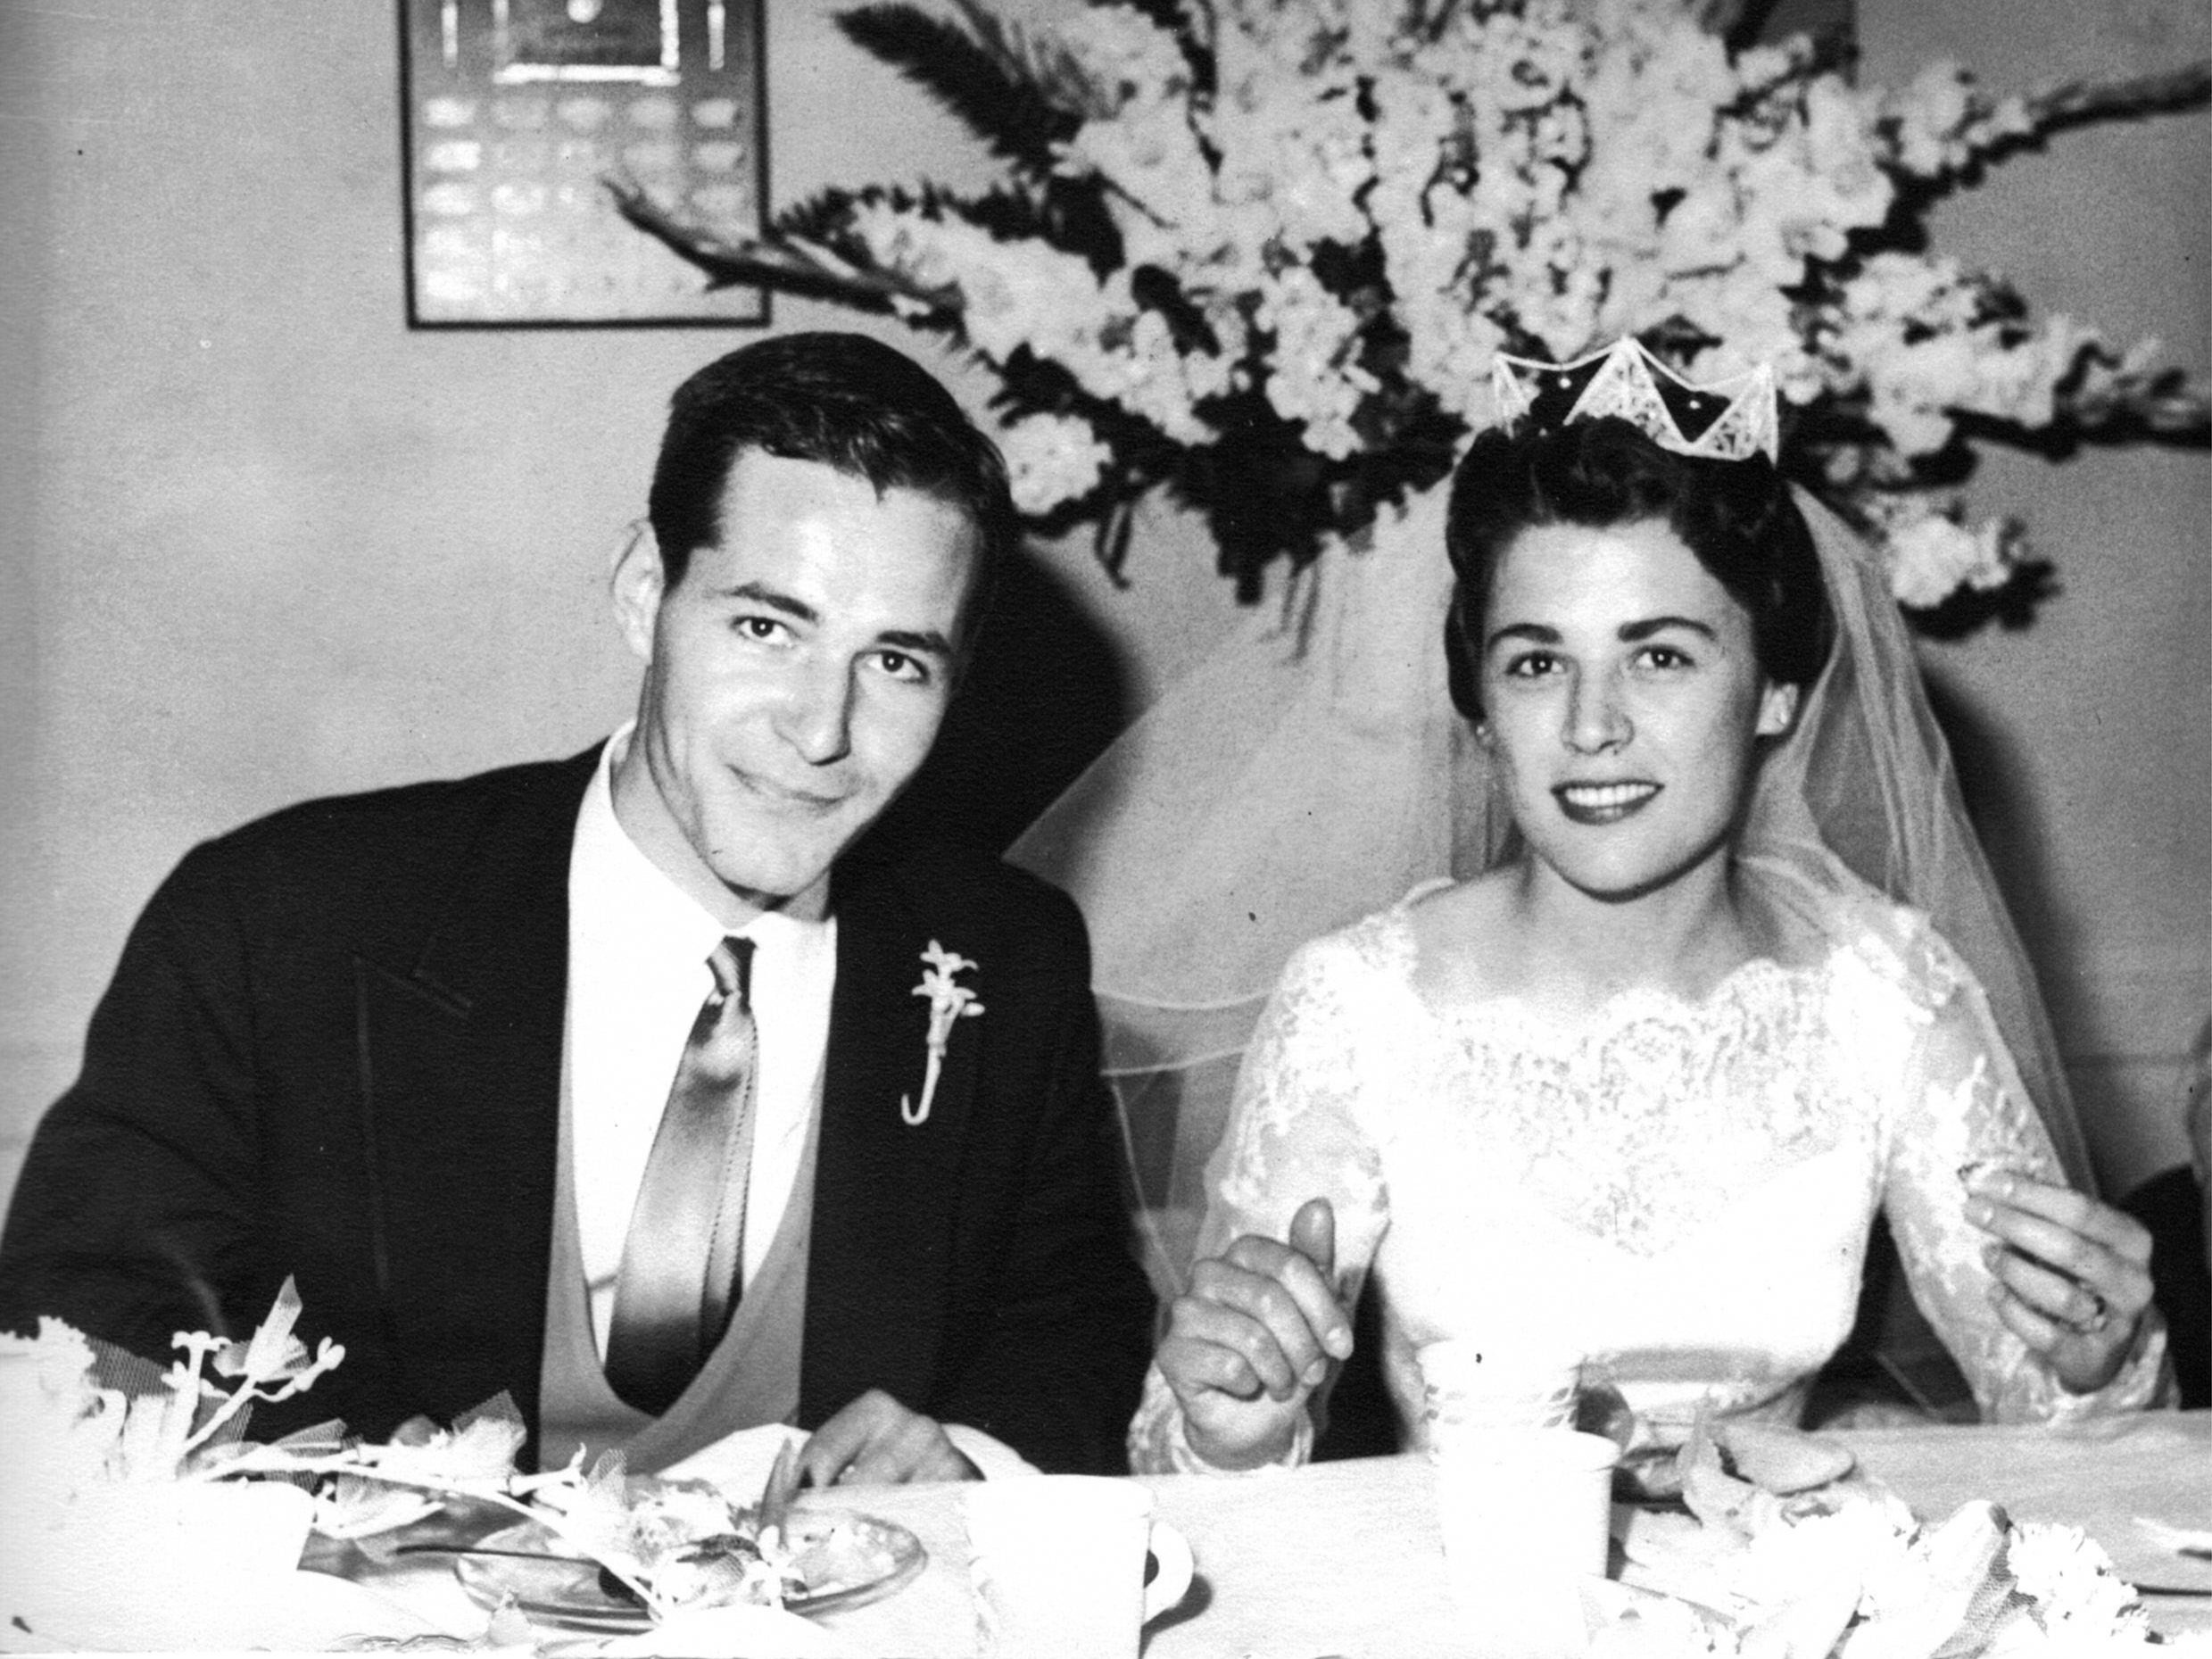 55岁的迈克尔·麦凯和56岁的艾米莉亚·卡奇加斯
结婚日期:1960年6月11日
圣约瑟夫天主教堂，波莫纳，加利福尼亚州
牧师.  詹姆斯·墨菲
